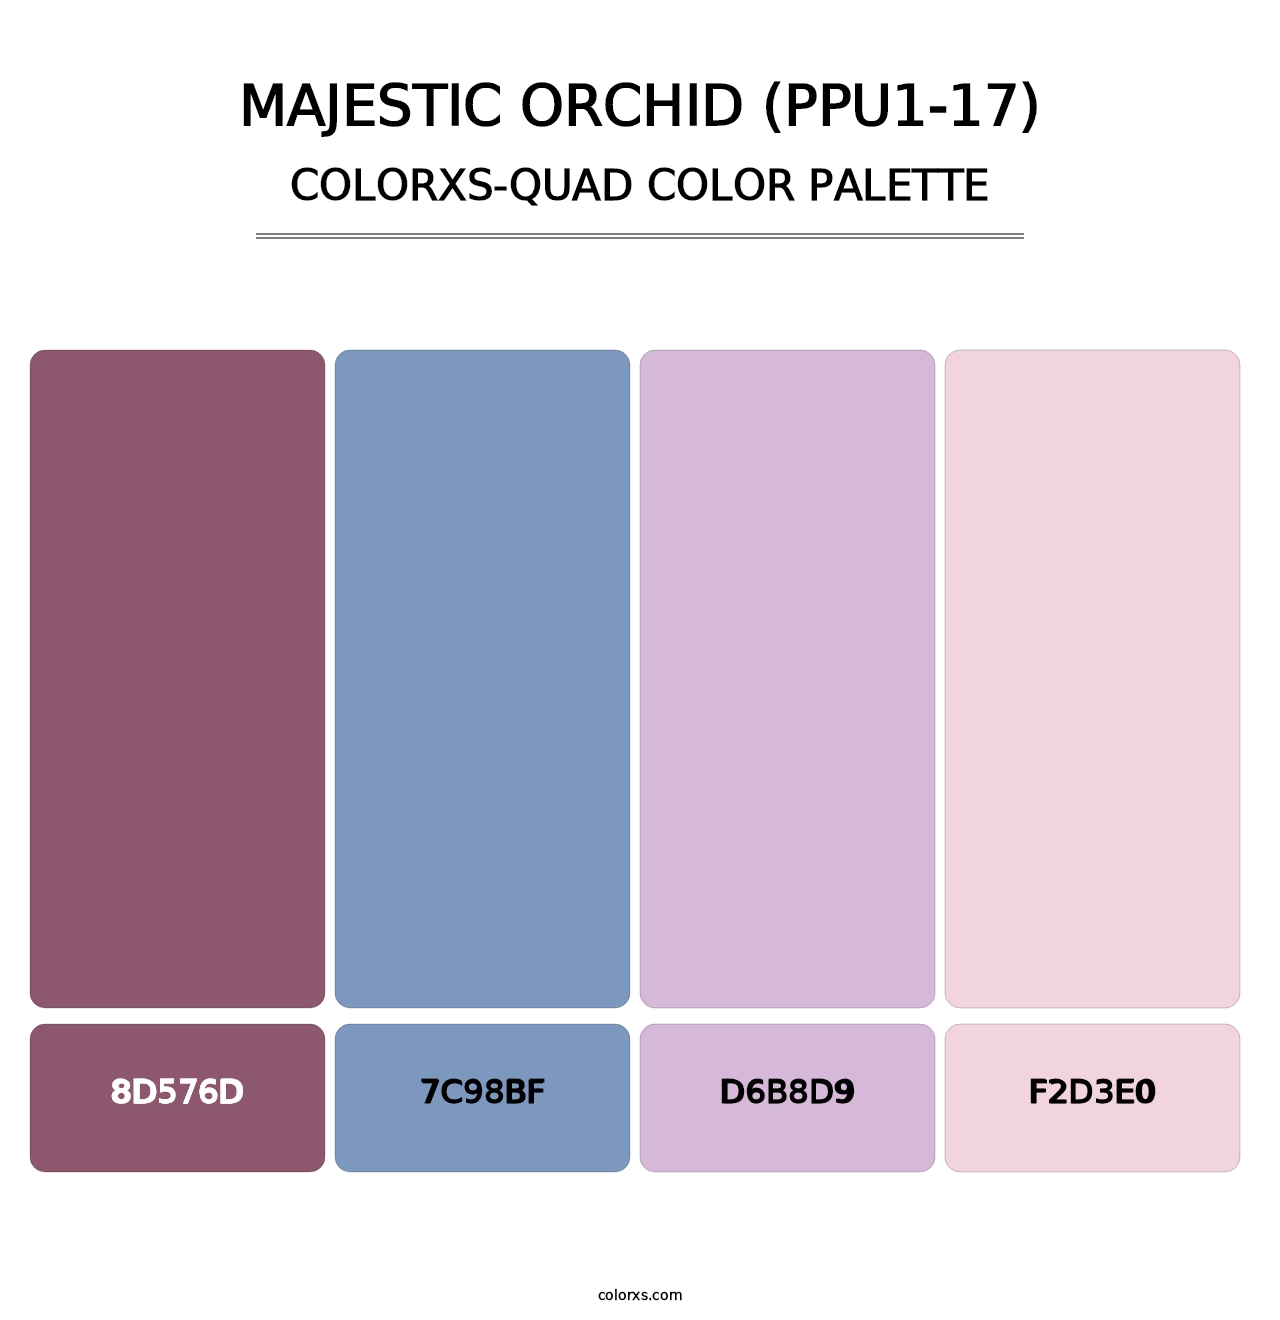 Majestic Orchid (PPU1-17) - Colorxs Quad Palette